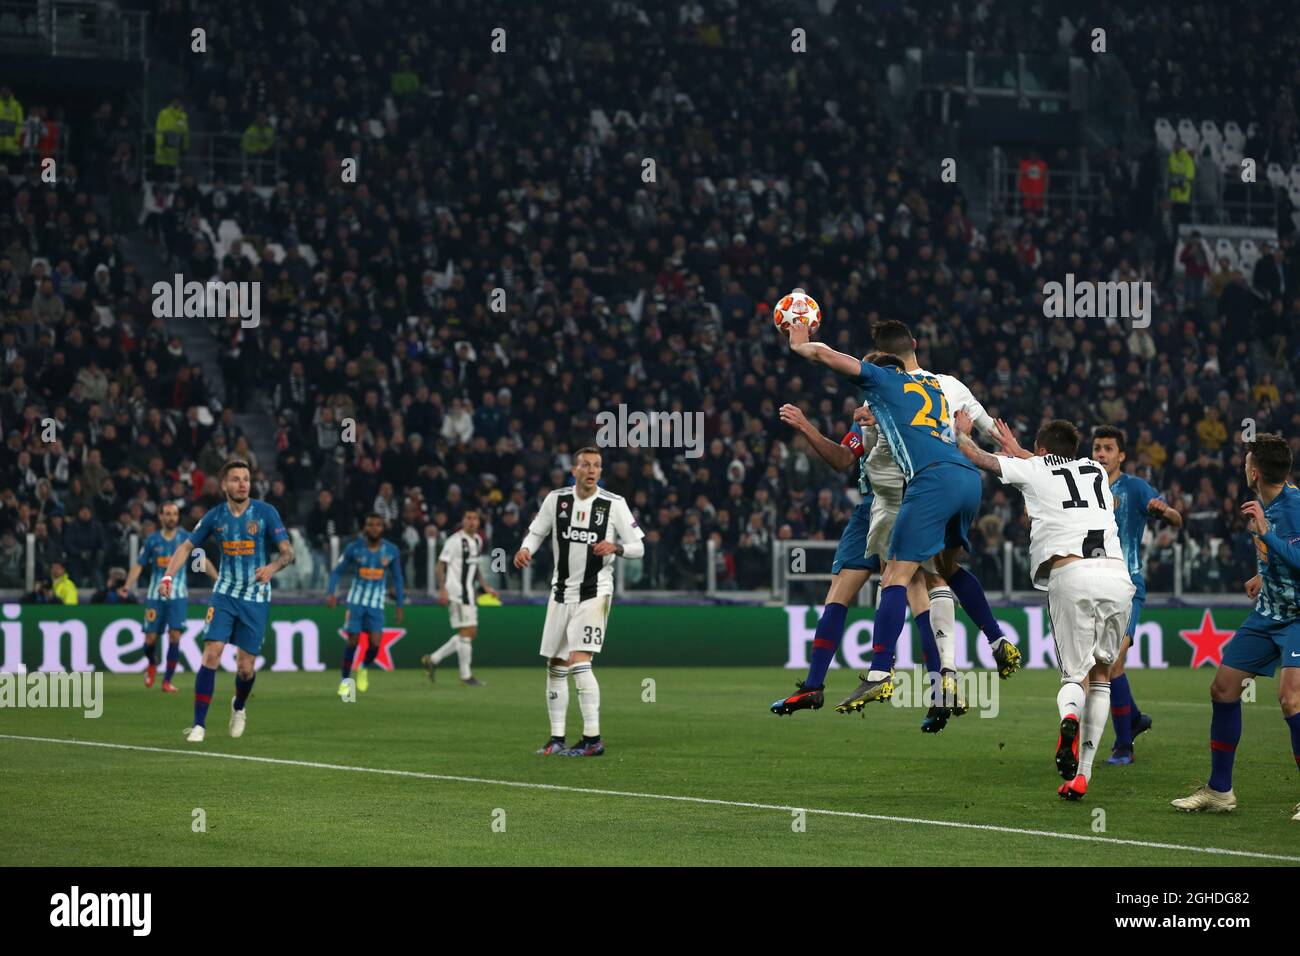 Cristiano Ronaldo von Juventus klettert über die Atletico Madrid Verteidigung, um den Ball ins Netz zu führen, um seiner Mannschaft in der Nacht während der UEFA Champions League Runde von 16 im Allianz Stadium, Turin, Italien, eine Führung von 2-0 zu geben. Bild Datum 12. März 2019. Bildnachweis sollte lauten: Jonathan Moscrop/Sportimage via PA Images Stockfoto